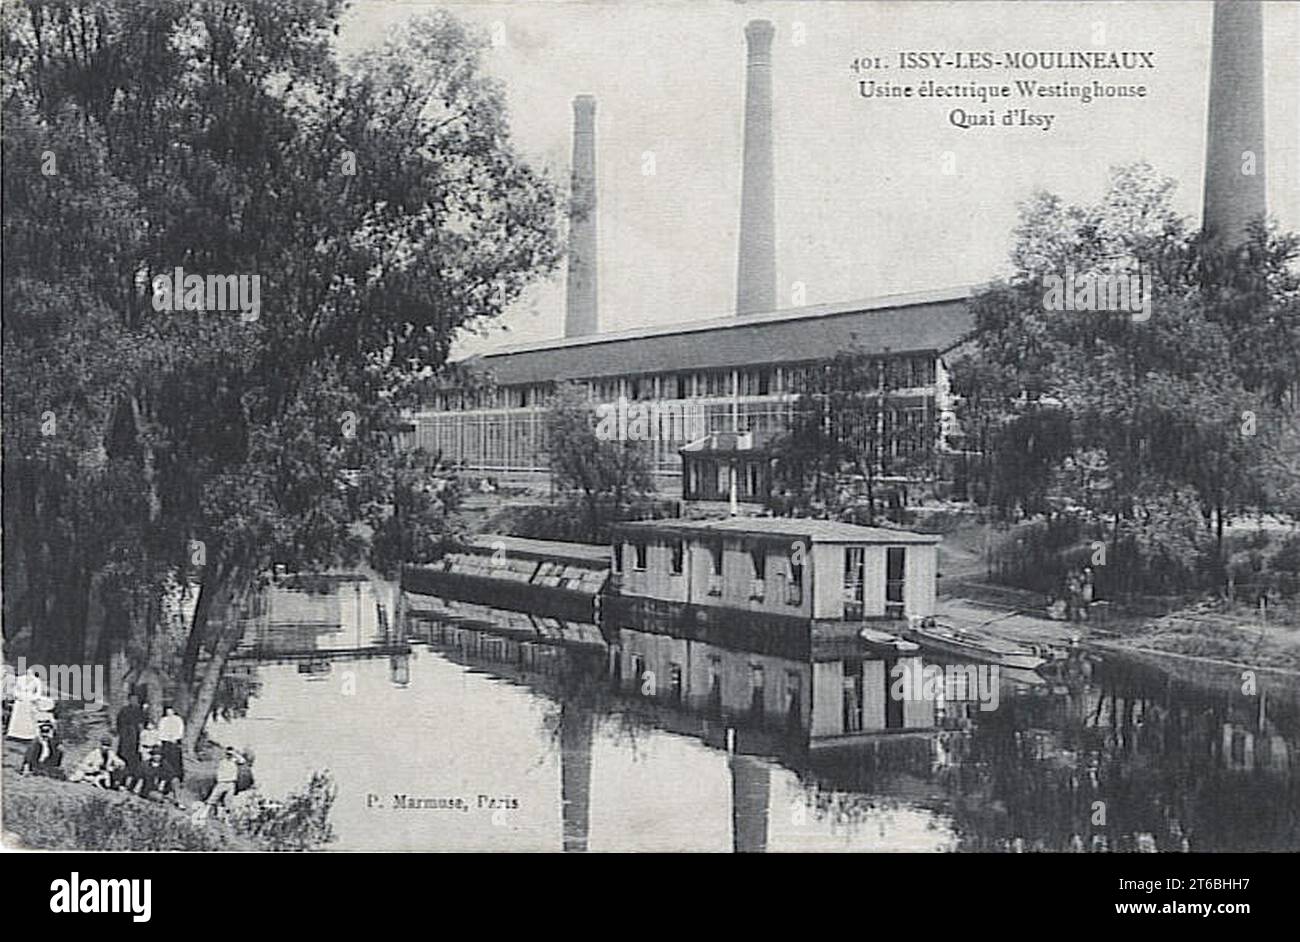 Usine Electrique Westinghouse, quai d'Issy, Issy-les-Moulineaux, carte postale distribuée 1909 Banque D'Images